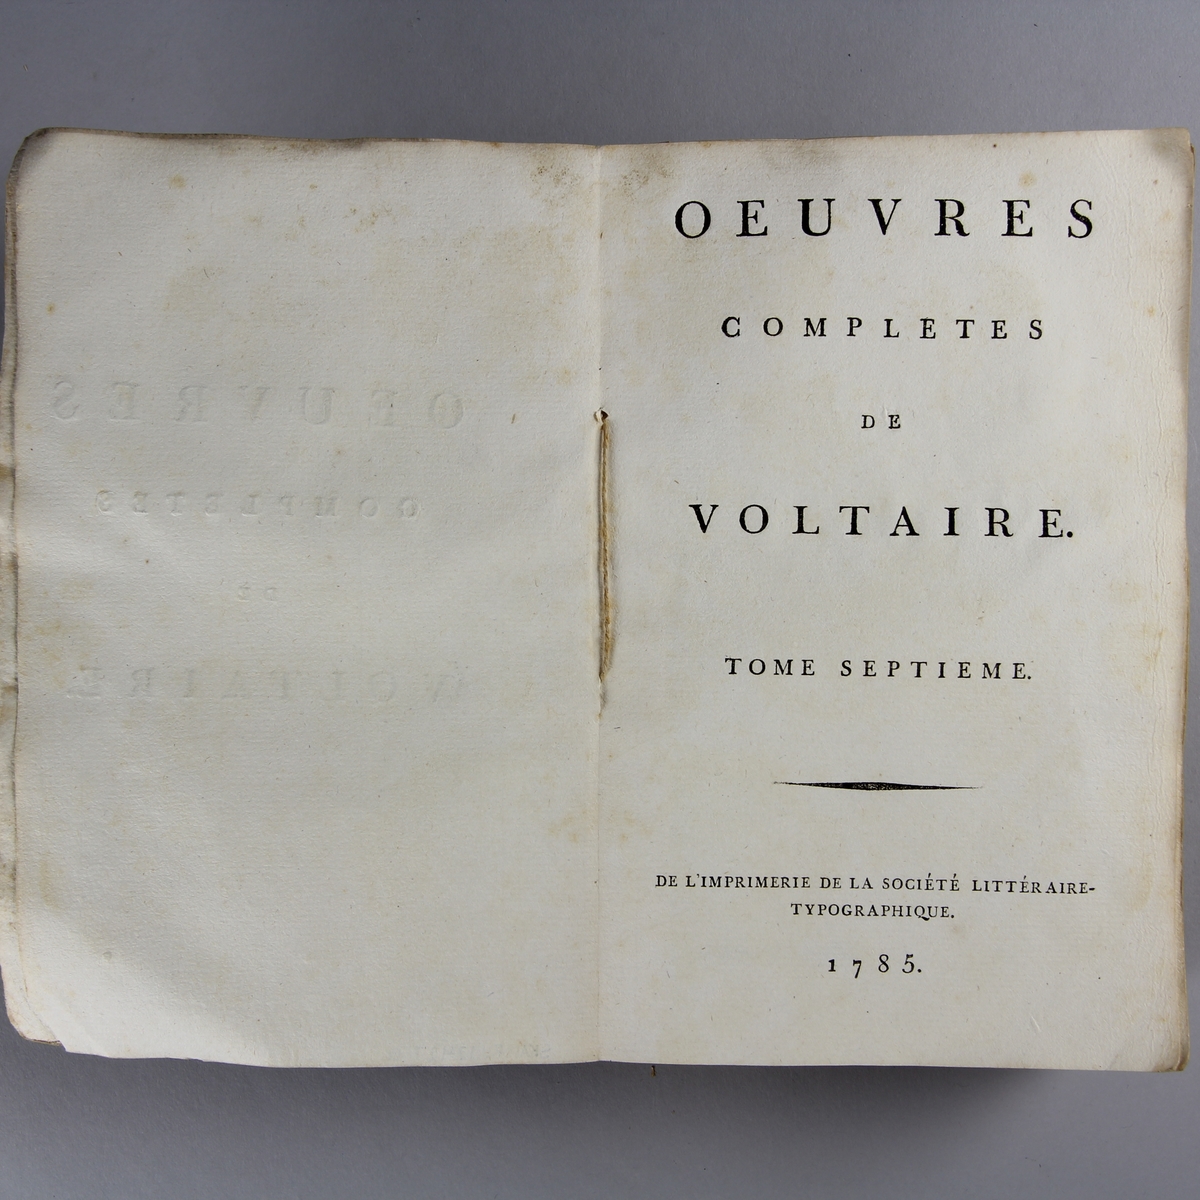 Bok, häftad,"Oeuvres complètes de Voltaire." del 7, tryckt 1785.
Pärm av gråblått papper, skurna snitt. På ryggen pappersetikett med tryckt text med volymens namn och nummer. Ryggen blekt.